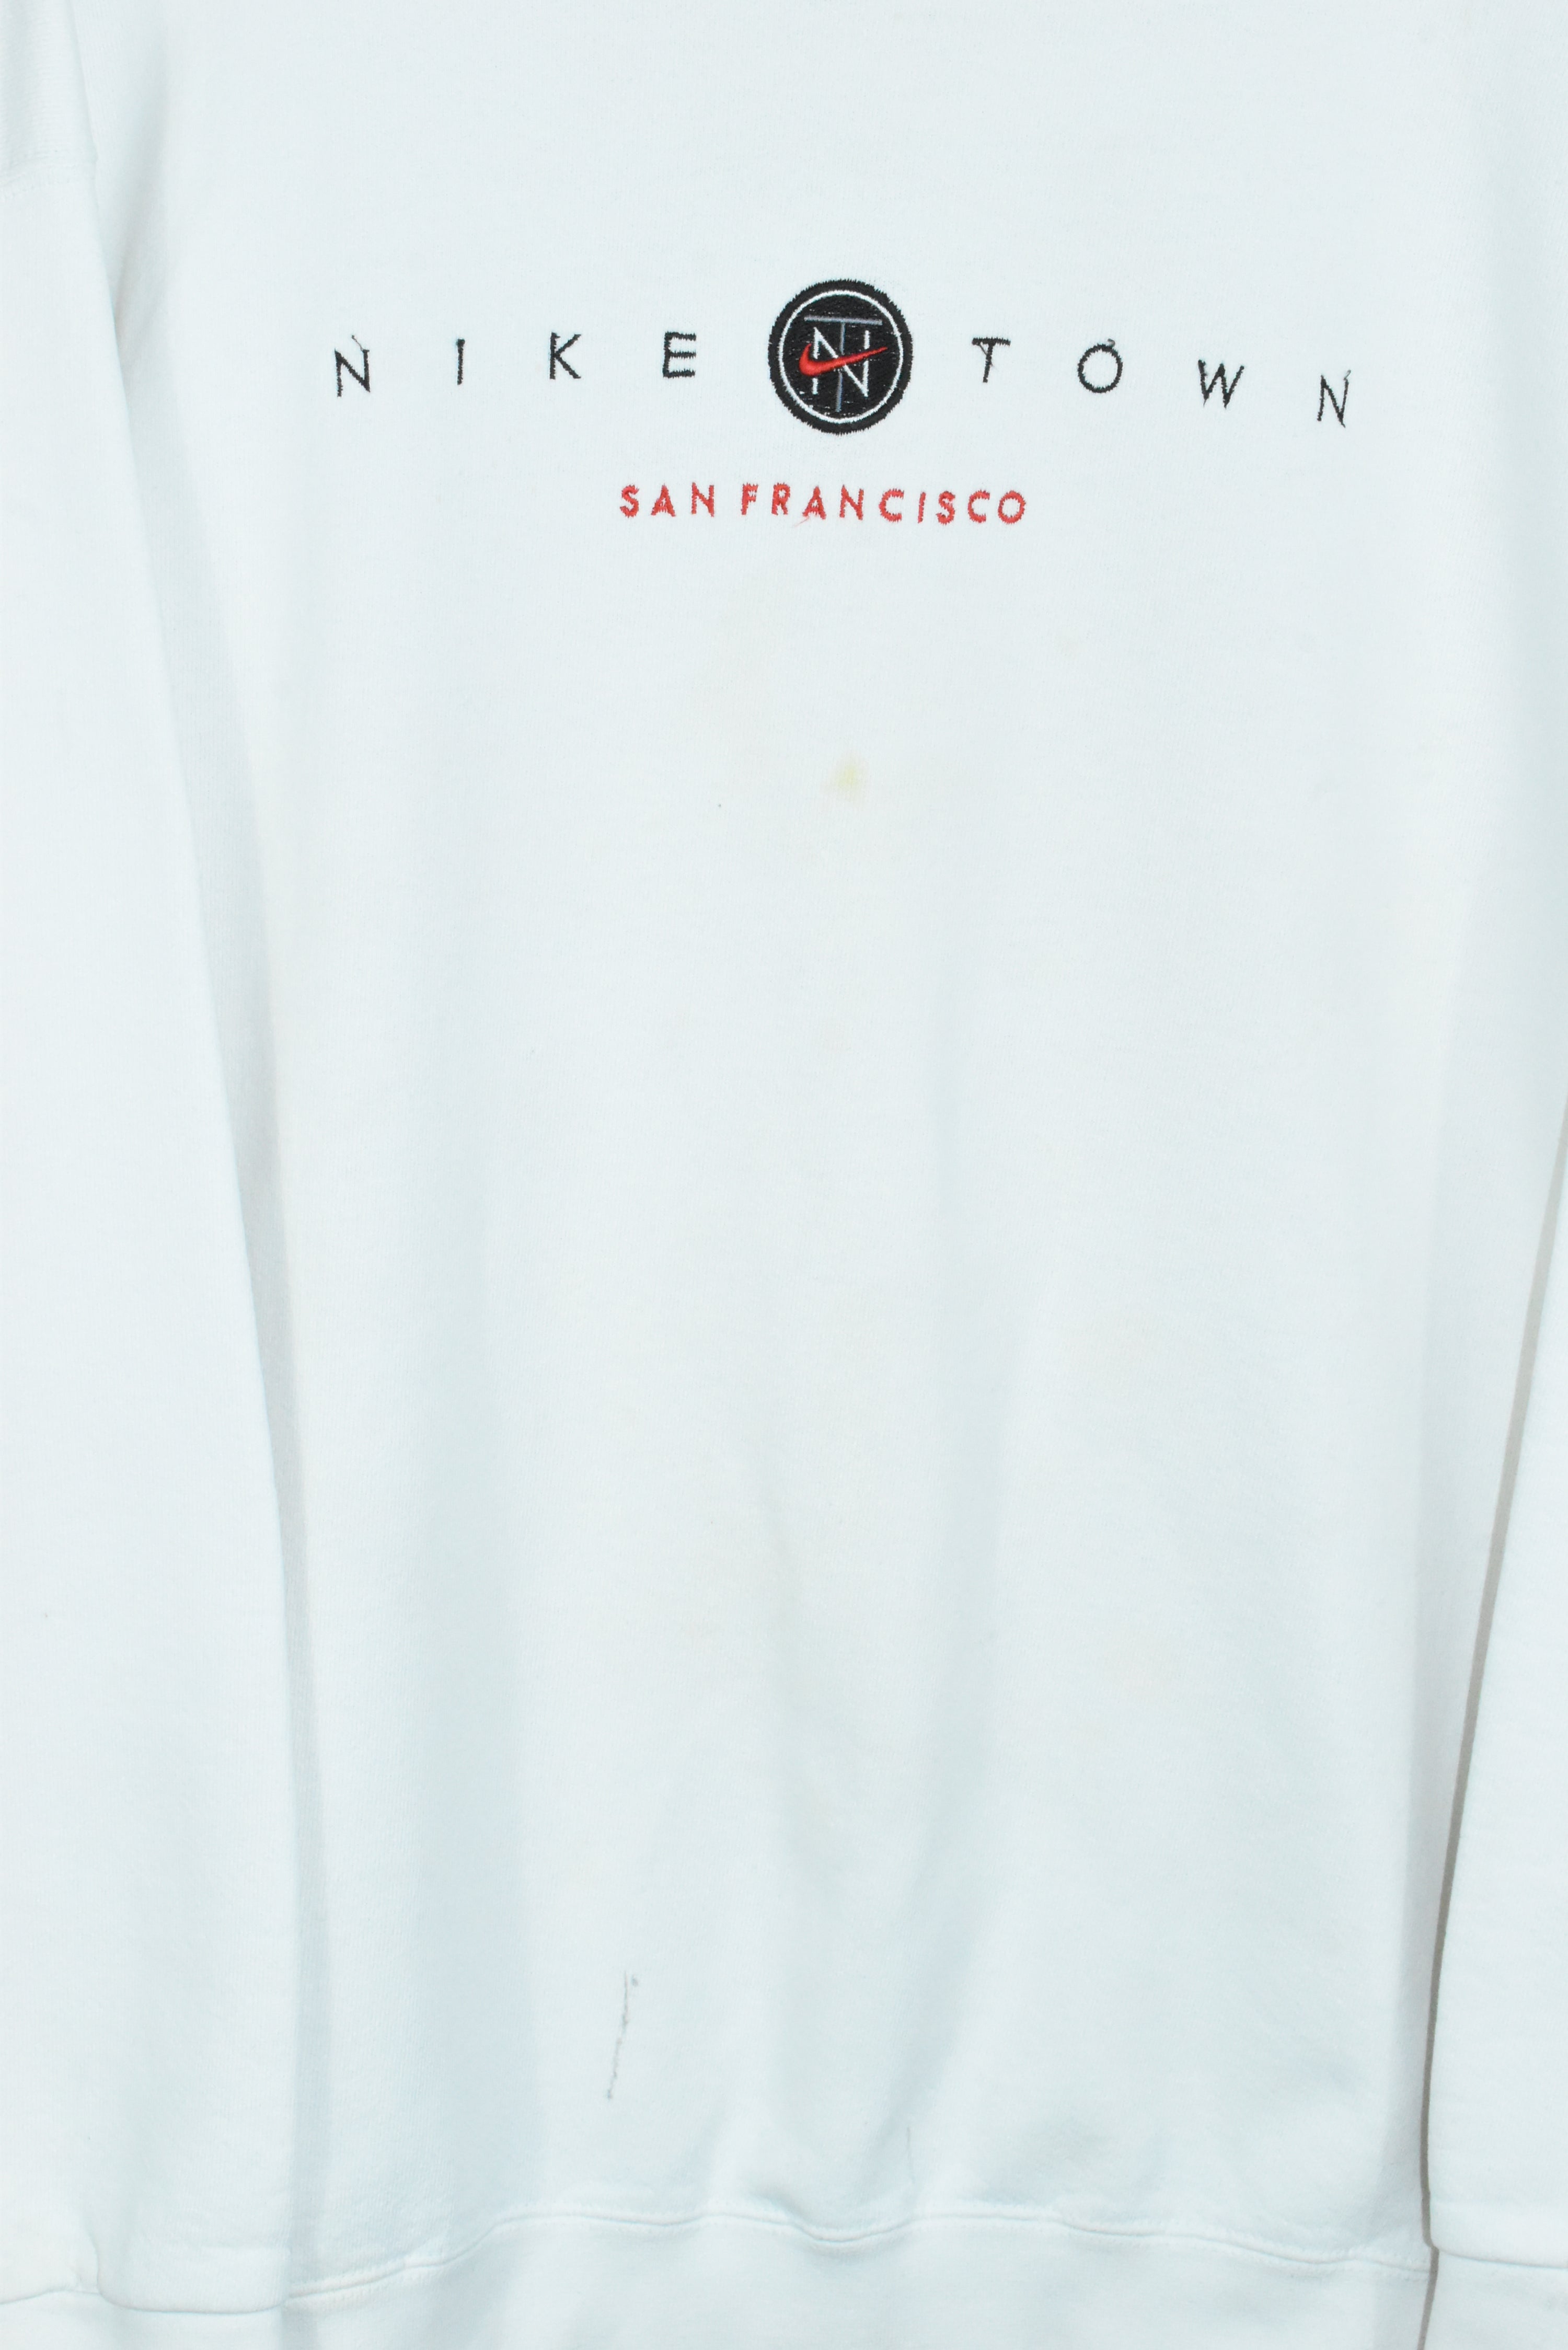 Vintage RARE Nike Town San Fran Sweatshirt XLARGE